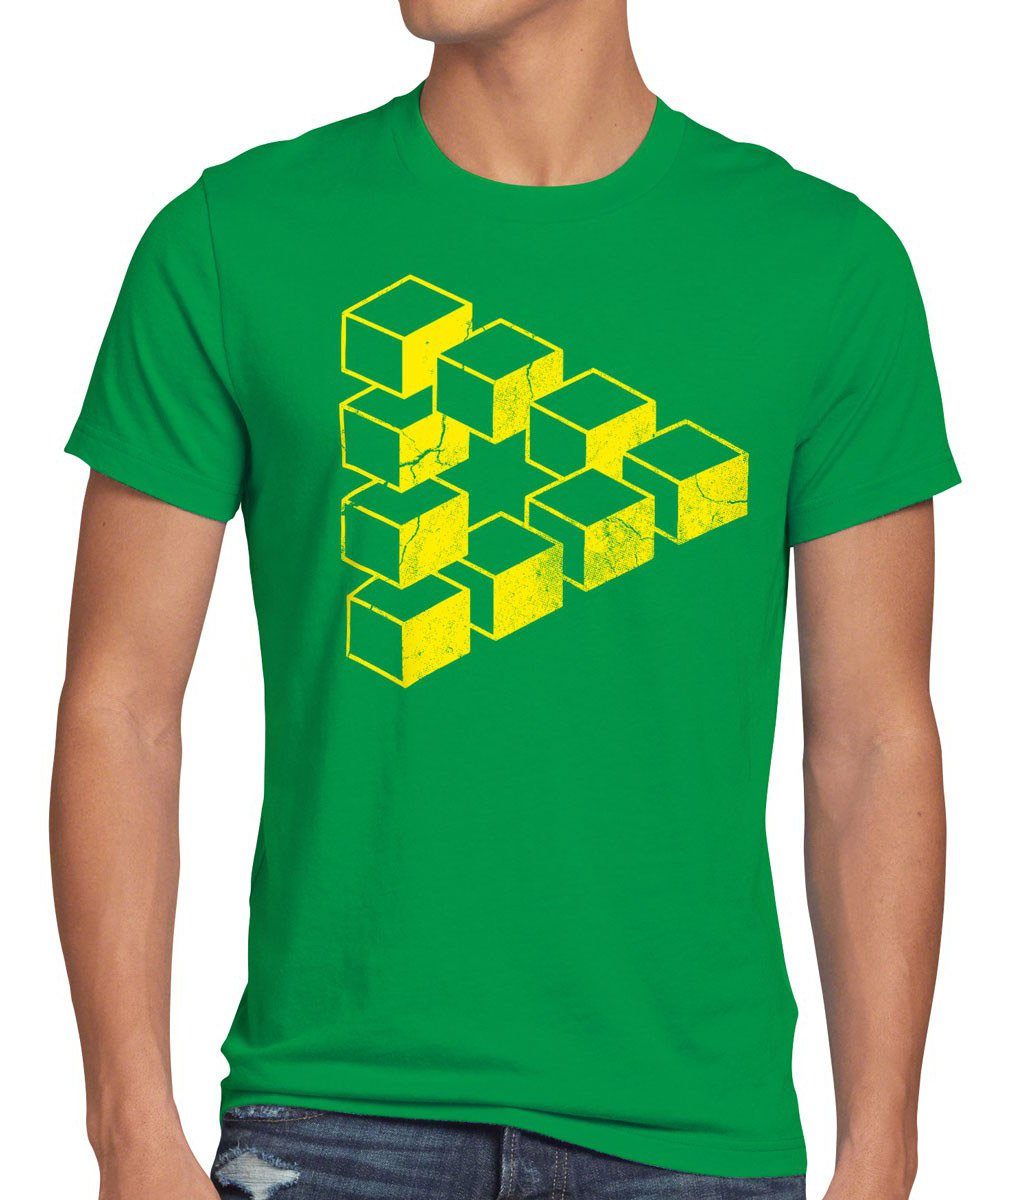 grün style3 Herren Cube Dreieck Print-Shirt T-Shirt Escher bang Big Theory Sheldon Cooper würfel Penrose